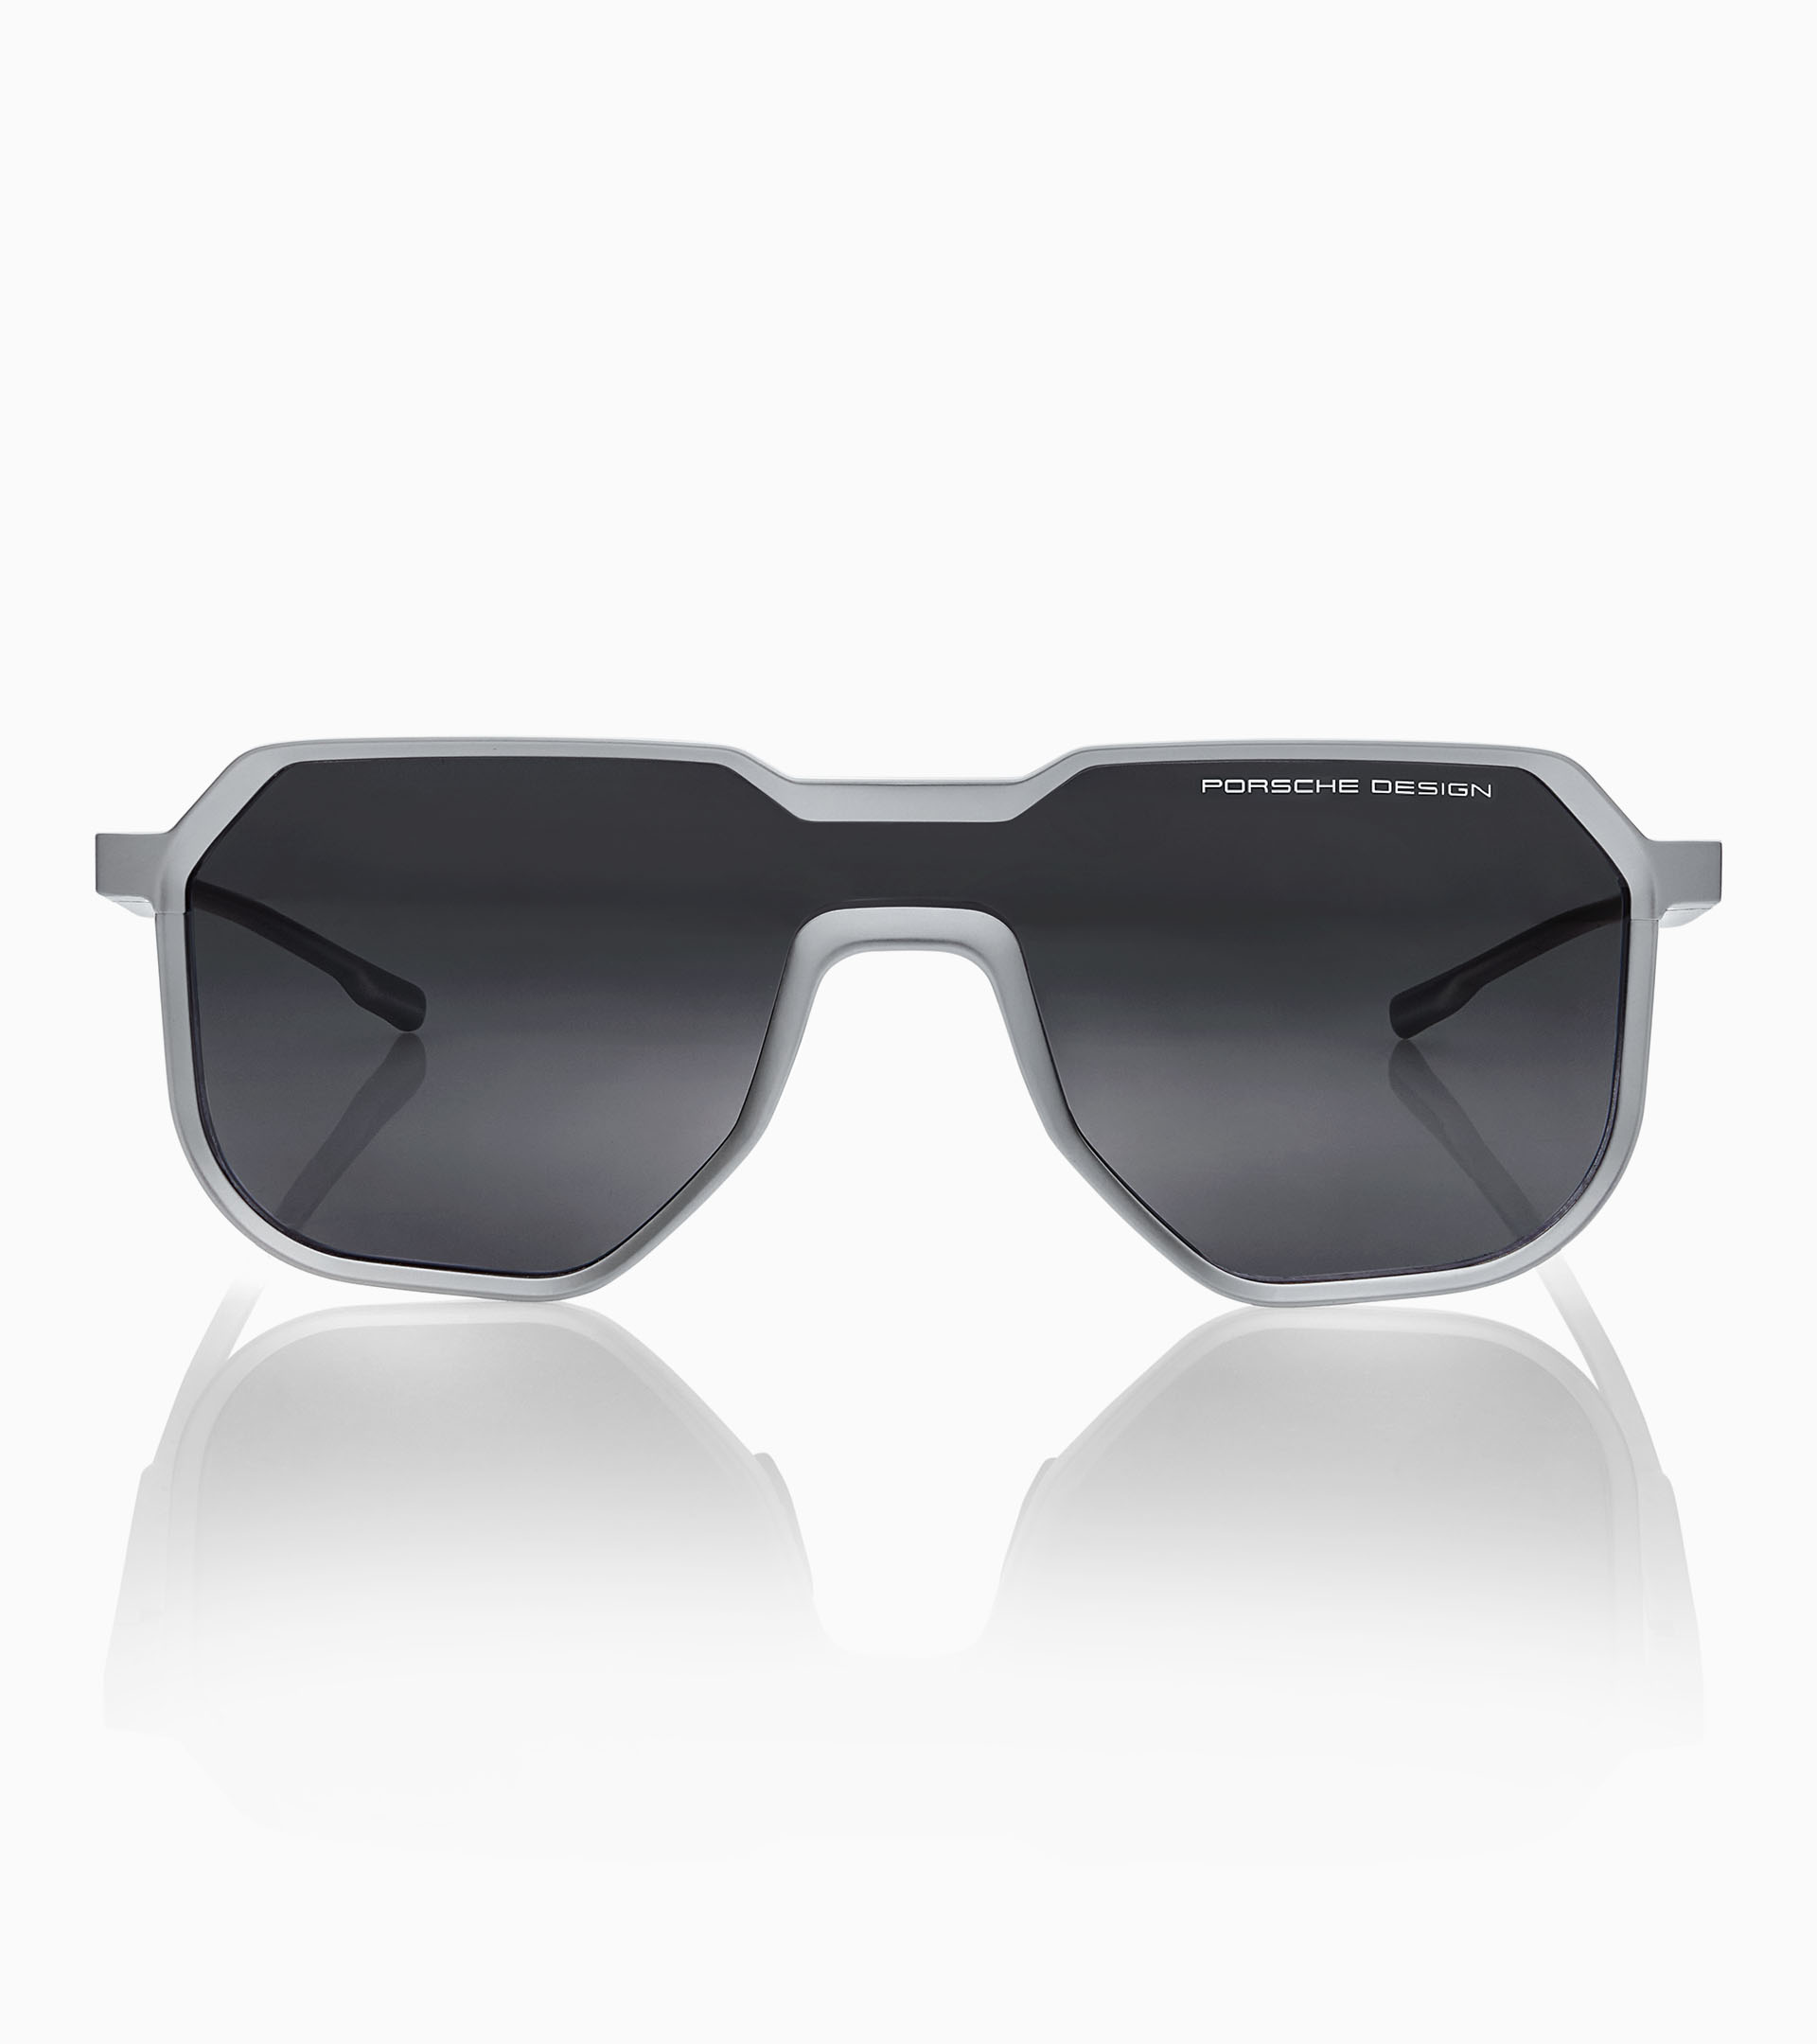 Sunglasses P´8951 Ltd. Edition - Eckige Sonnenbillen für Herren, Porsche  Design